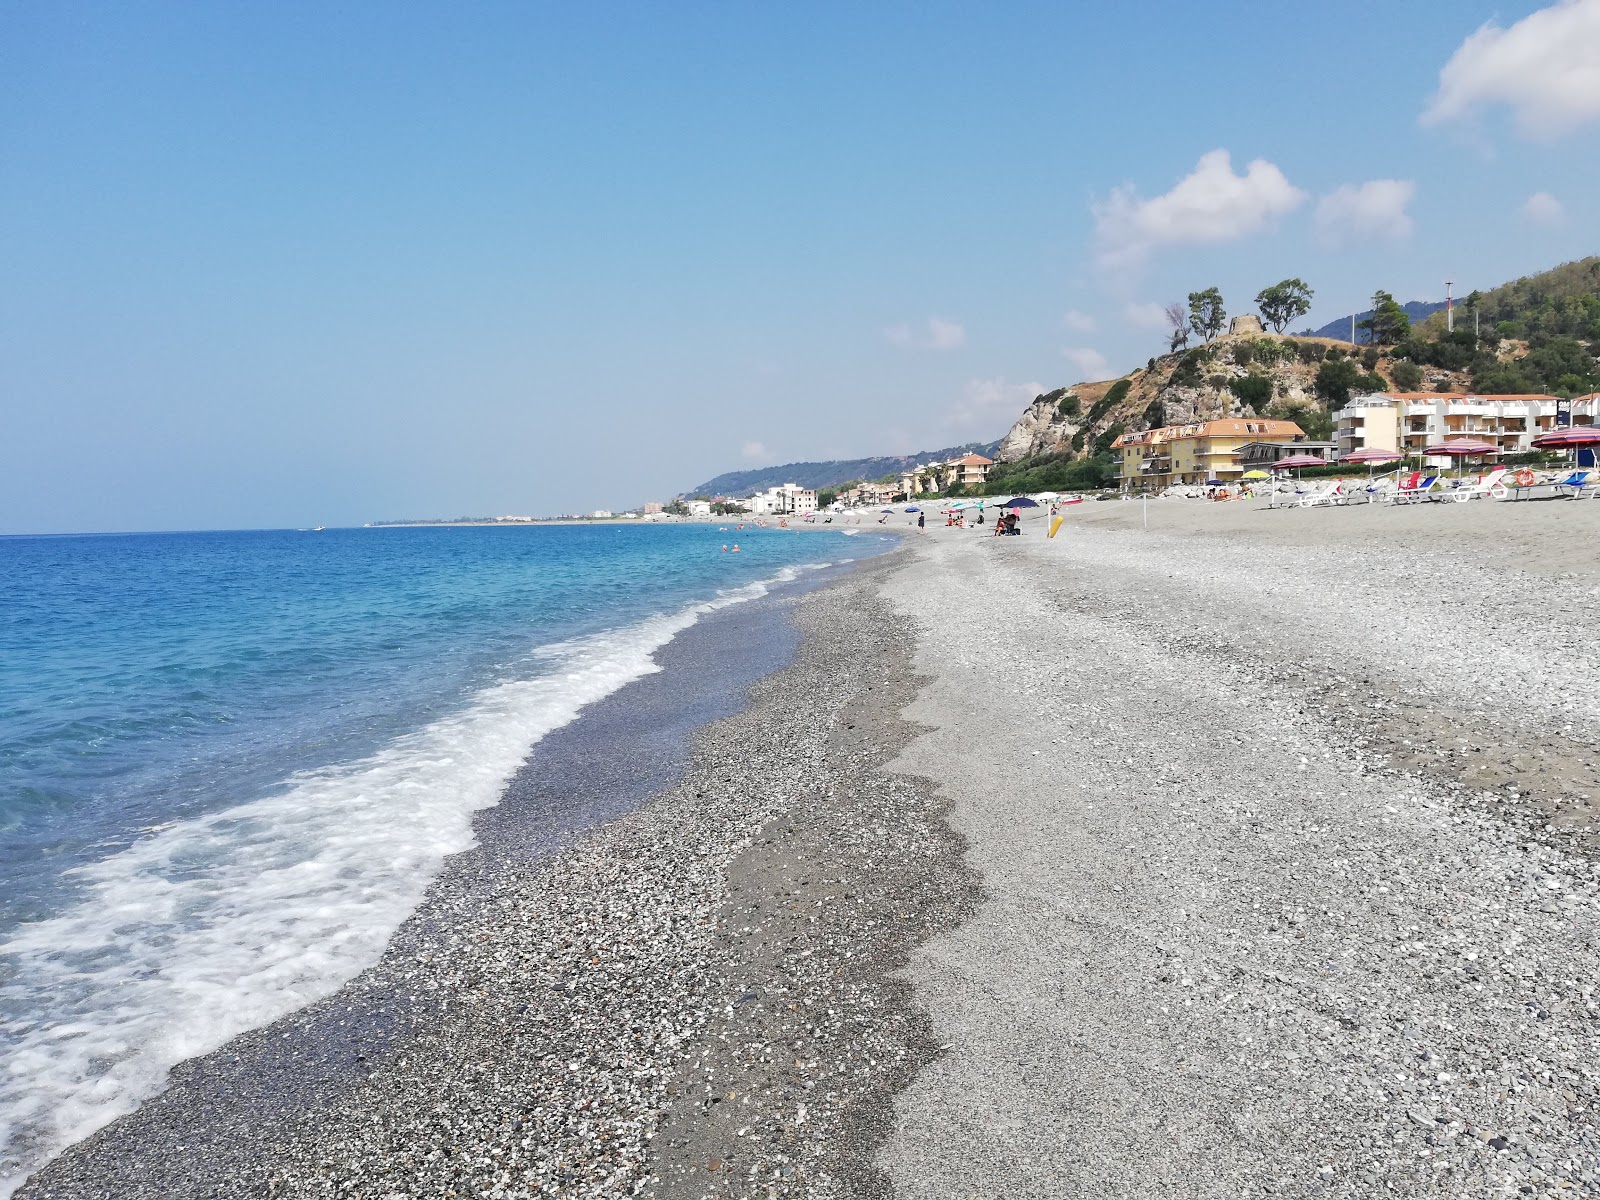 Cartolano beach'in fotoğrafı gri ince çakıl taş yüzey ile